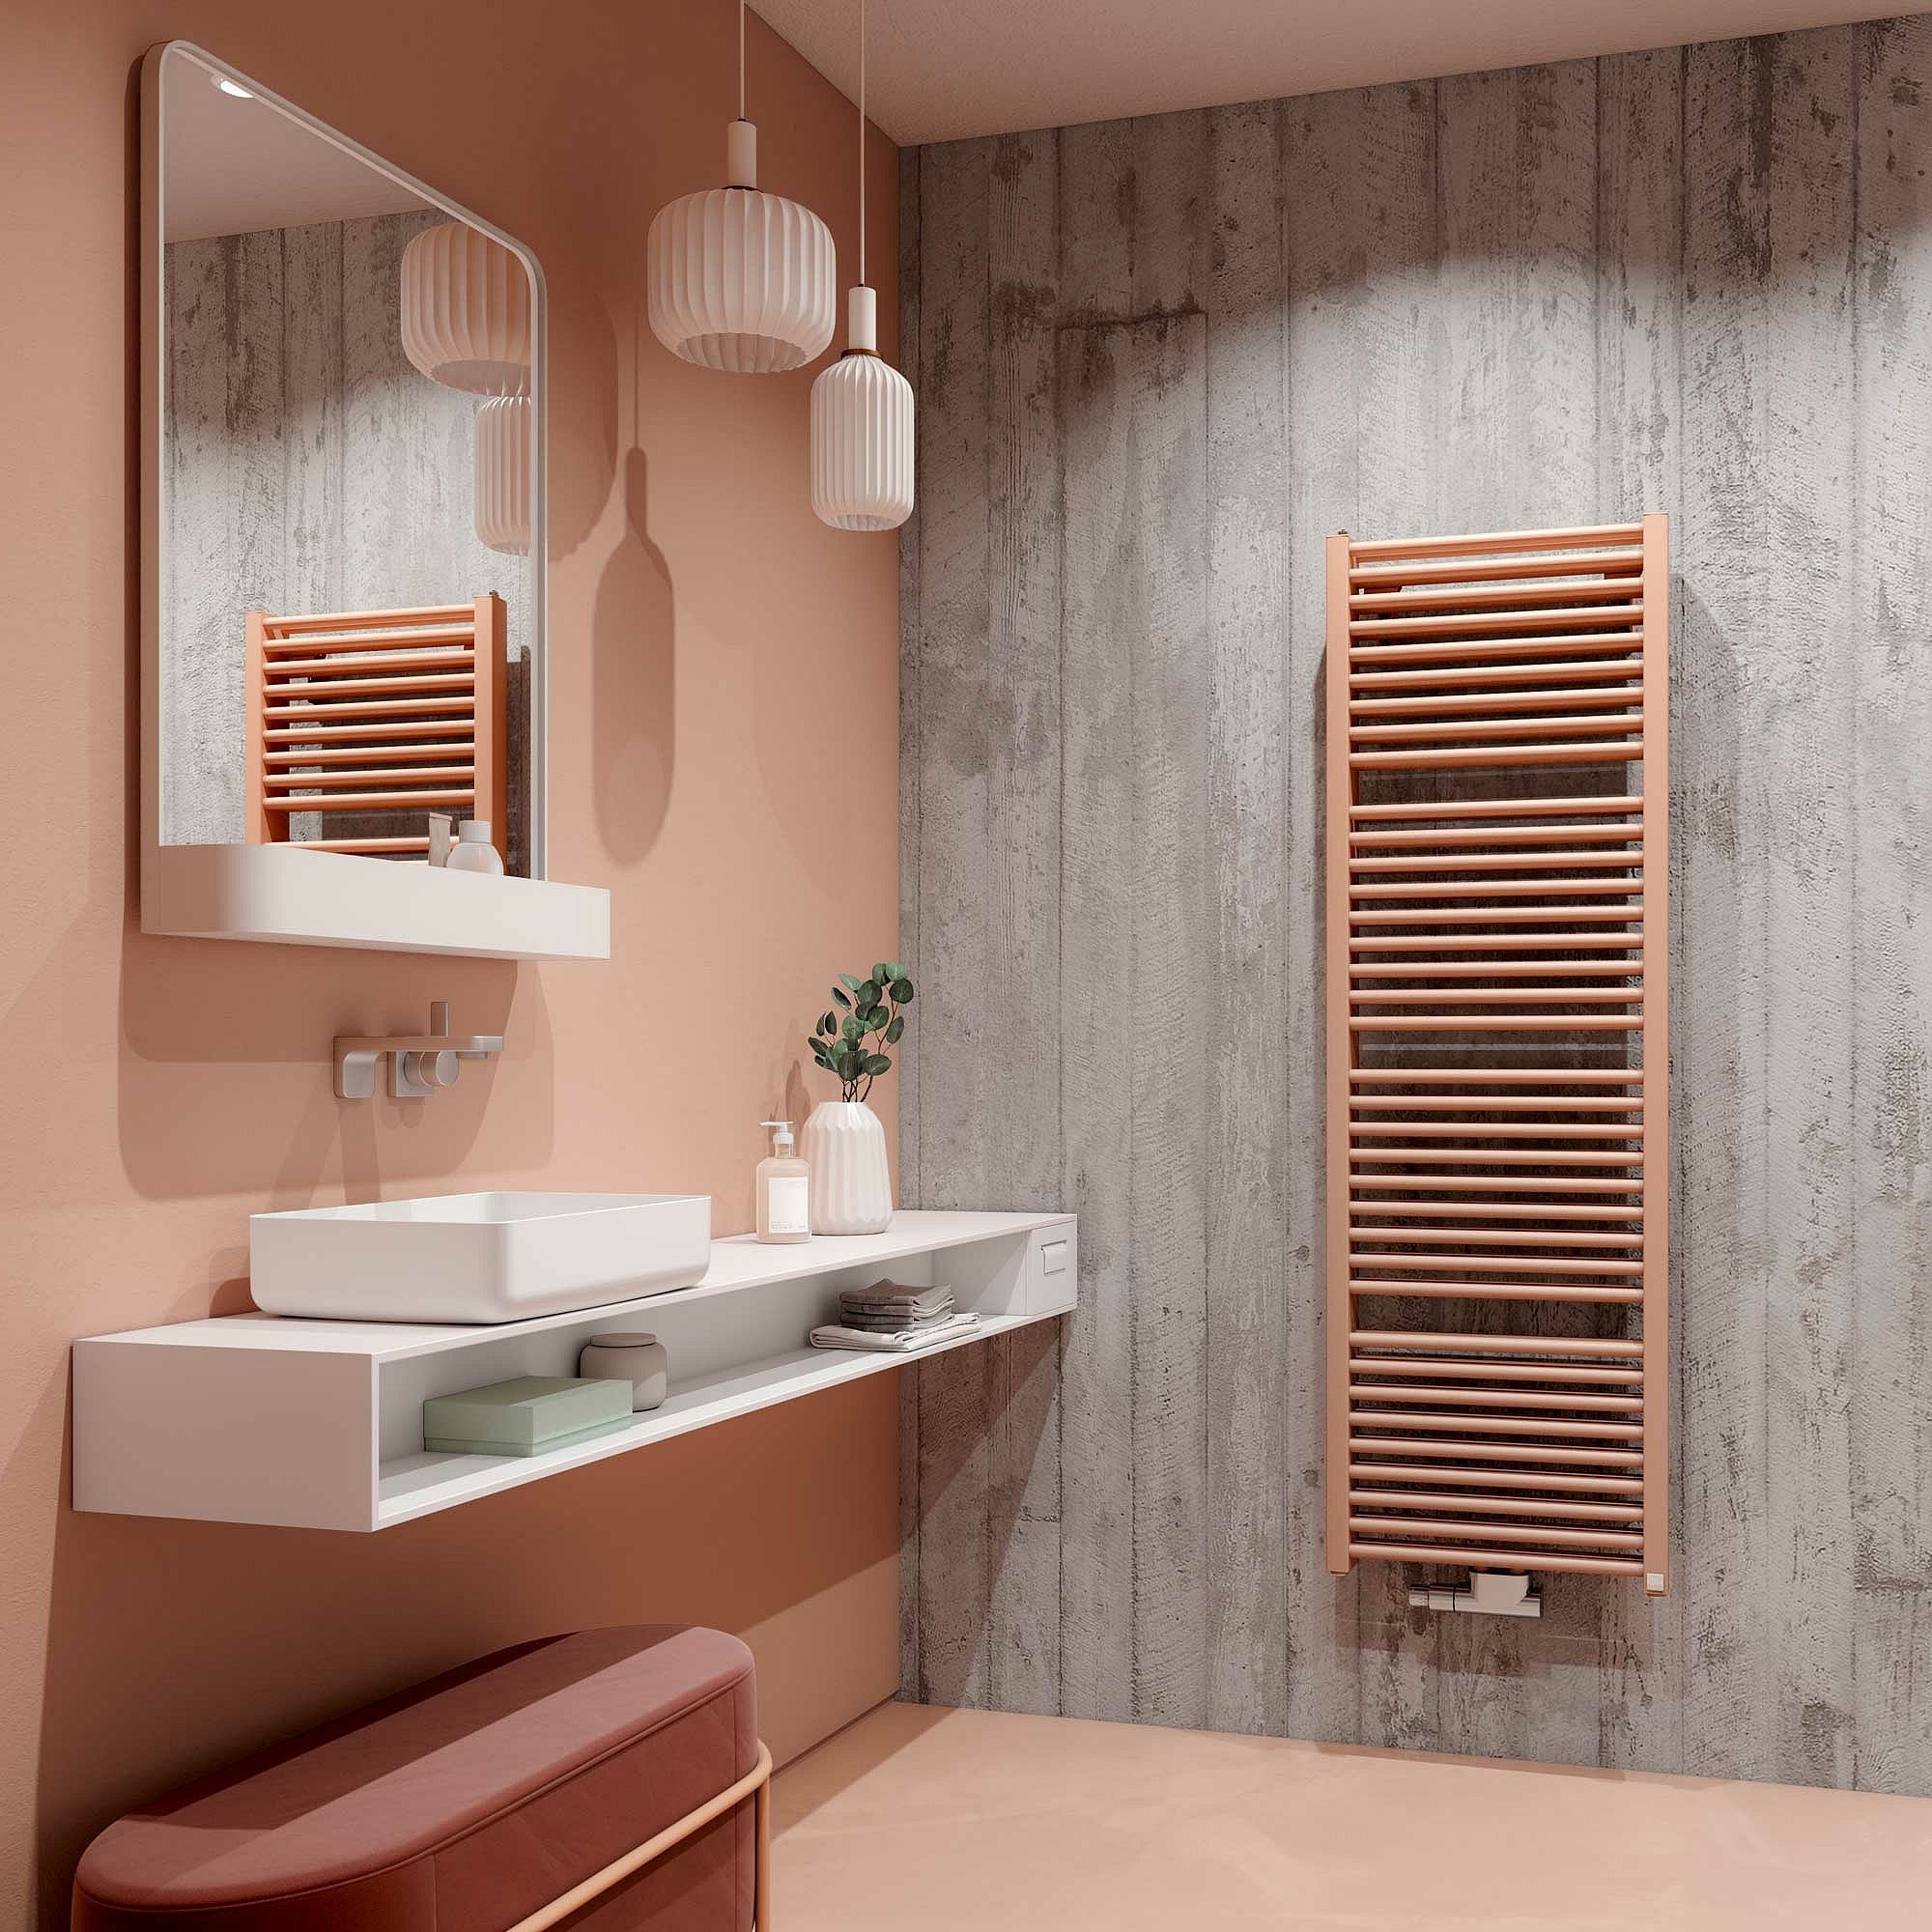 Kermi Duett dizaino radiatoriai - rankšluosčių džiovintuvai – klasikinis vonios radiatoriaus dizainas su dviguba galia.